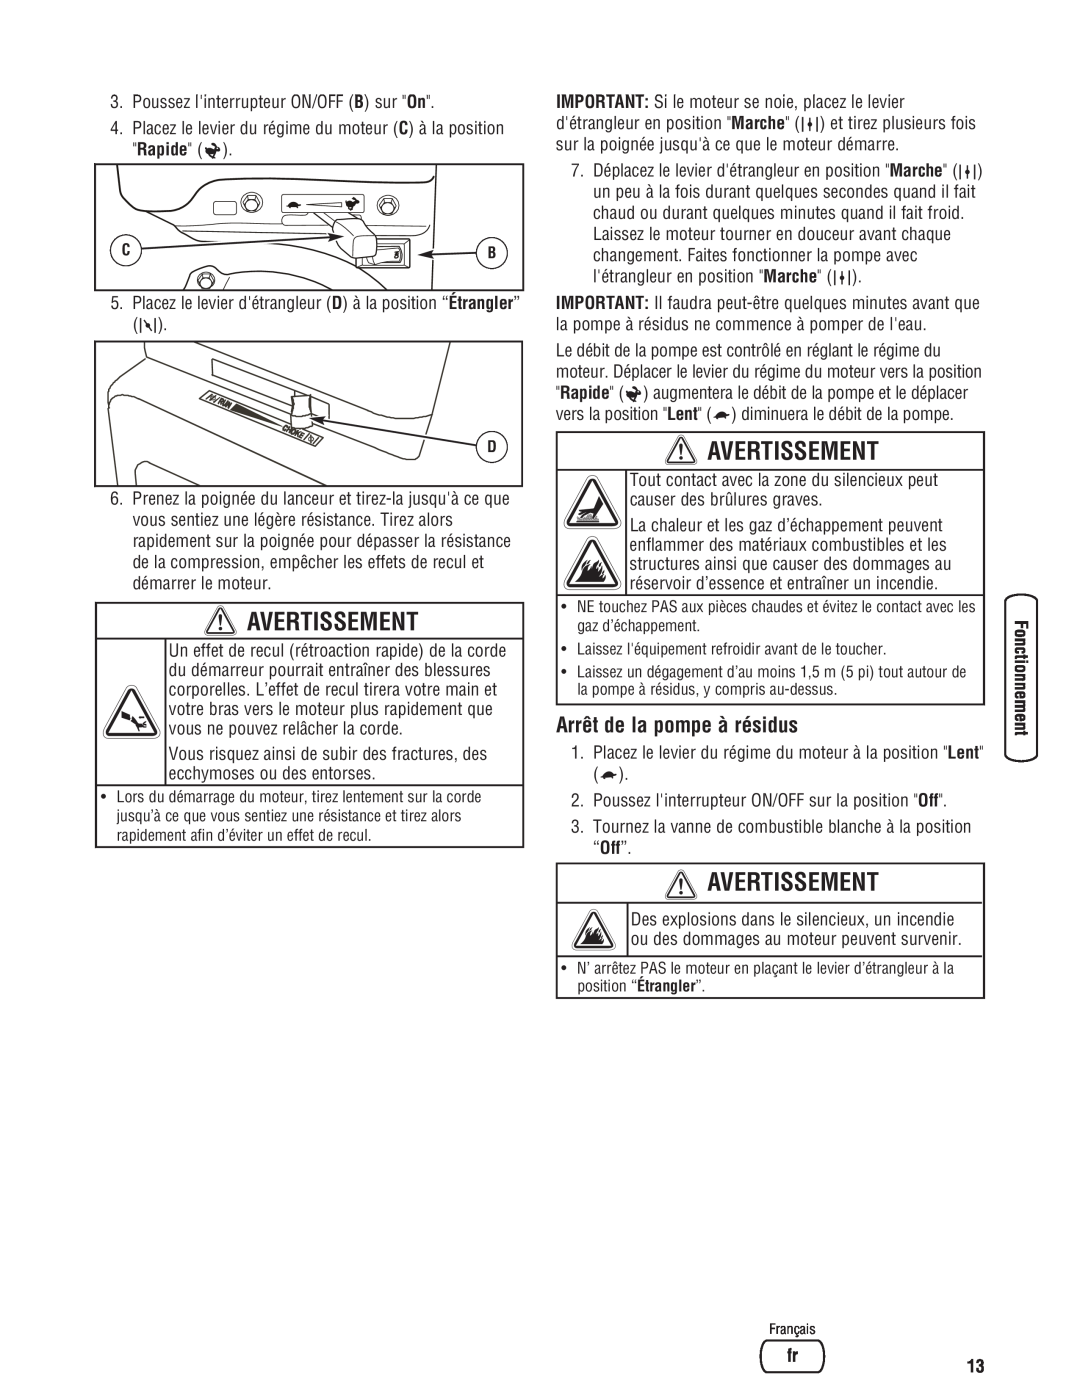 Briggs & Stratton 205378GS manual Arrêt de la pompe à résidus, Avertissement 